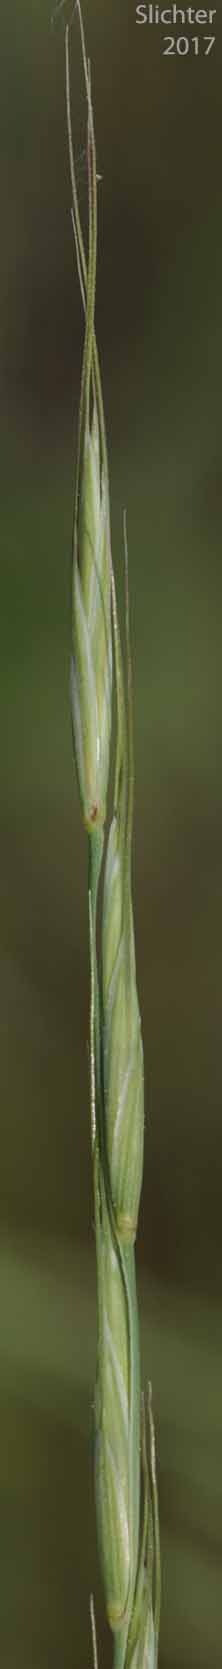 Bluebunch Wheatgrass, Beardless Bluebunch Wheatgrass, Beardless Wheatgrass: Pseudoroegneria spicata (Synonyms: Agropyron inerme, Agropyron spicatum , Agropyron spicatum var. inerme, Agropyron spicatum var. pubescens, Agropyron vaseyi, Elymus spicatus, Elytrigia spicata, Pseudoroegneria spicata ssp. inermis, Pseudoroegneria spicata ssp. spicata, Roegneria spicata)